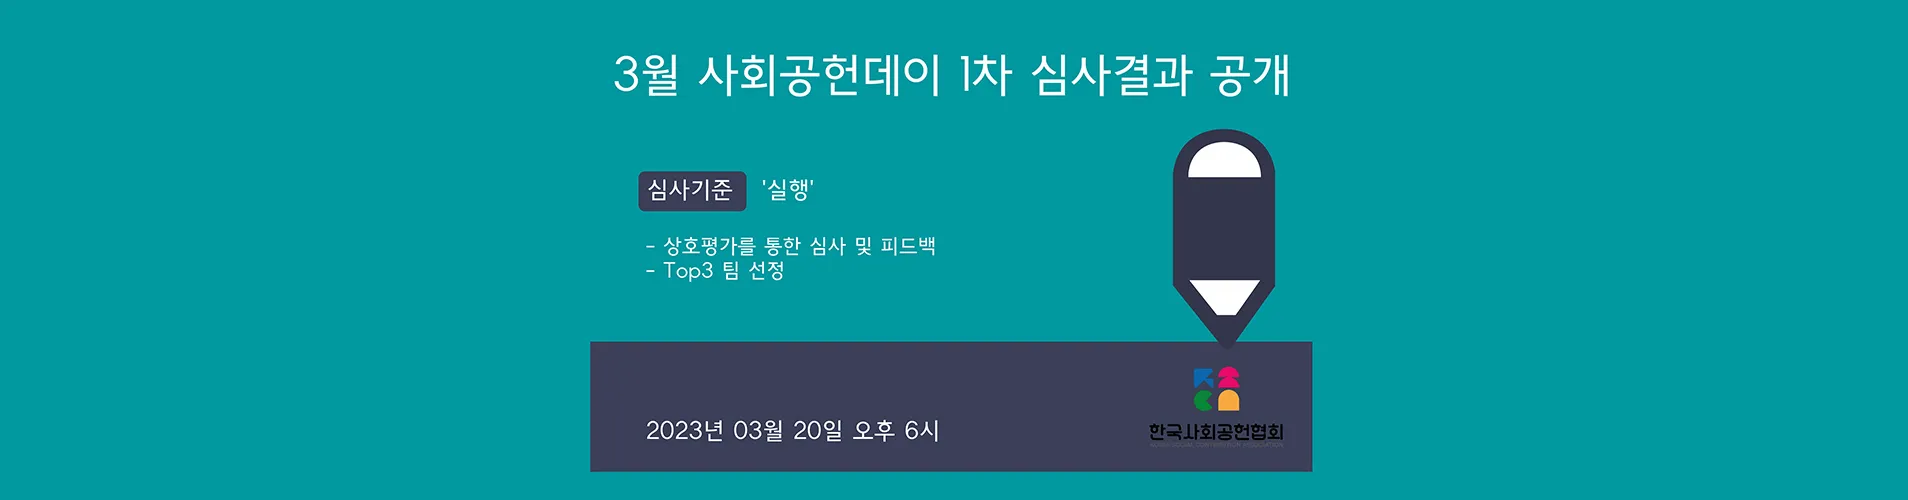 [03/20] 3월 사회공헌데이 1차 심사결과 공개(Top3 선정)